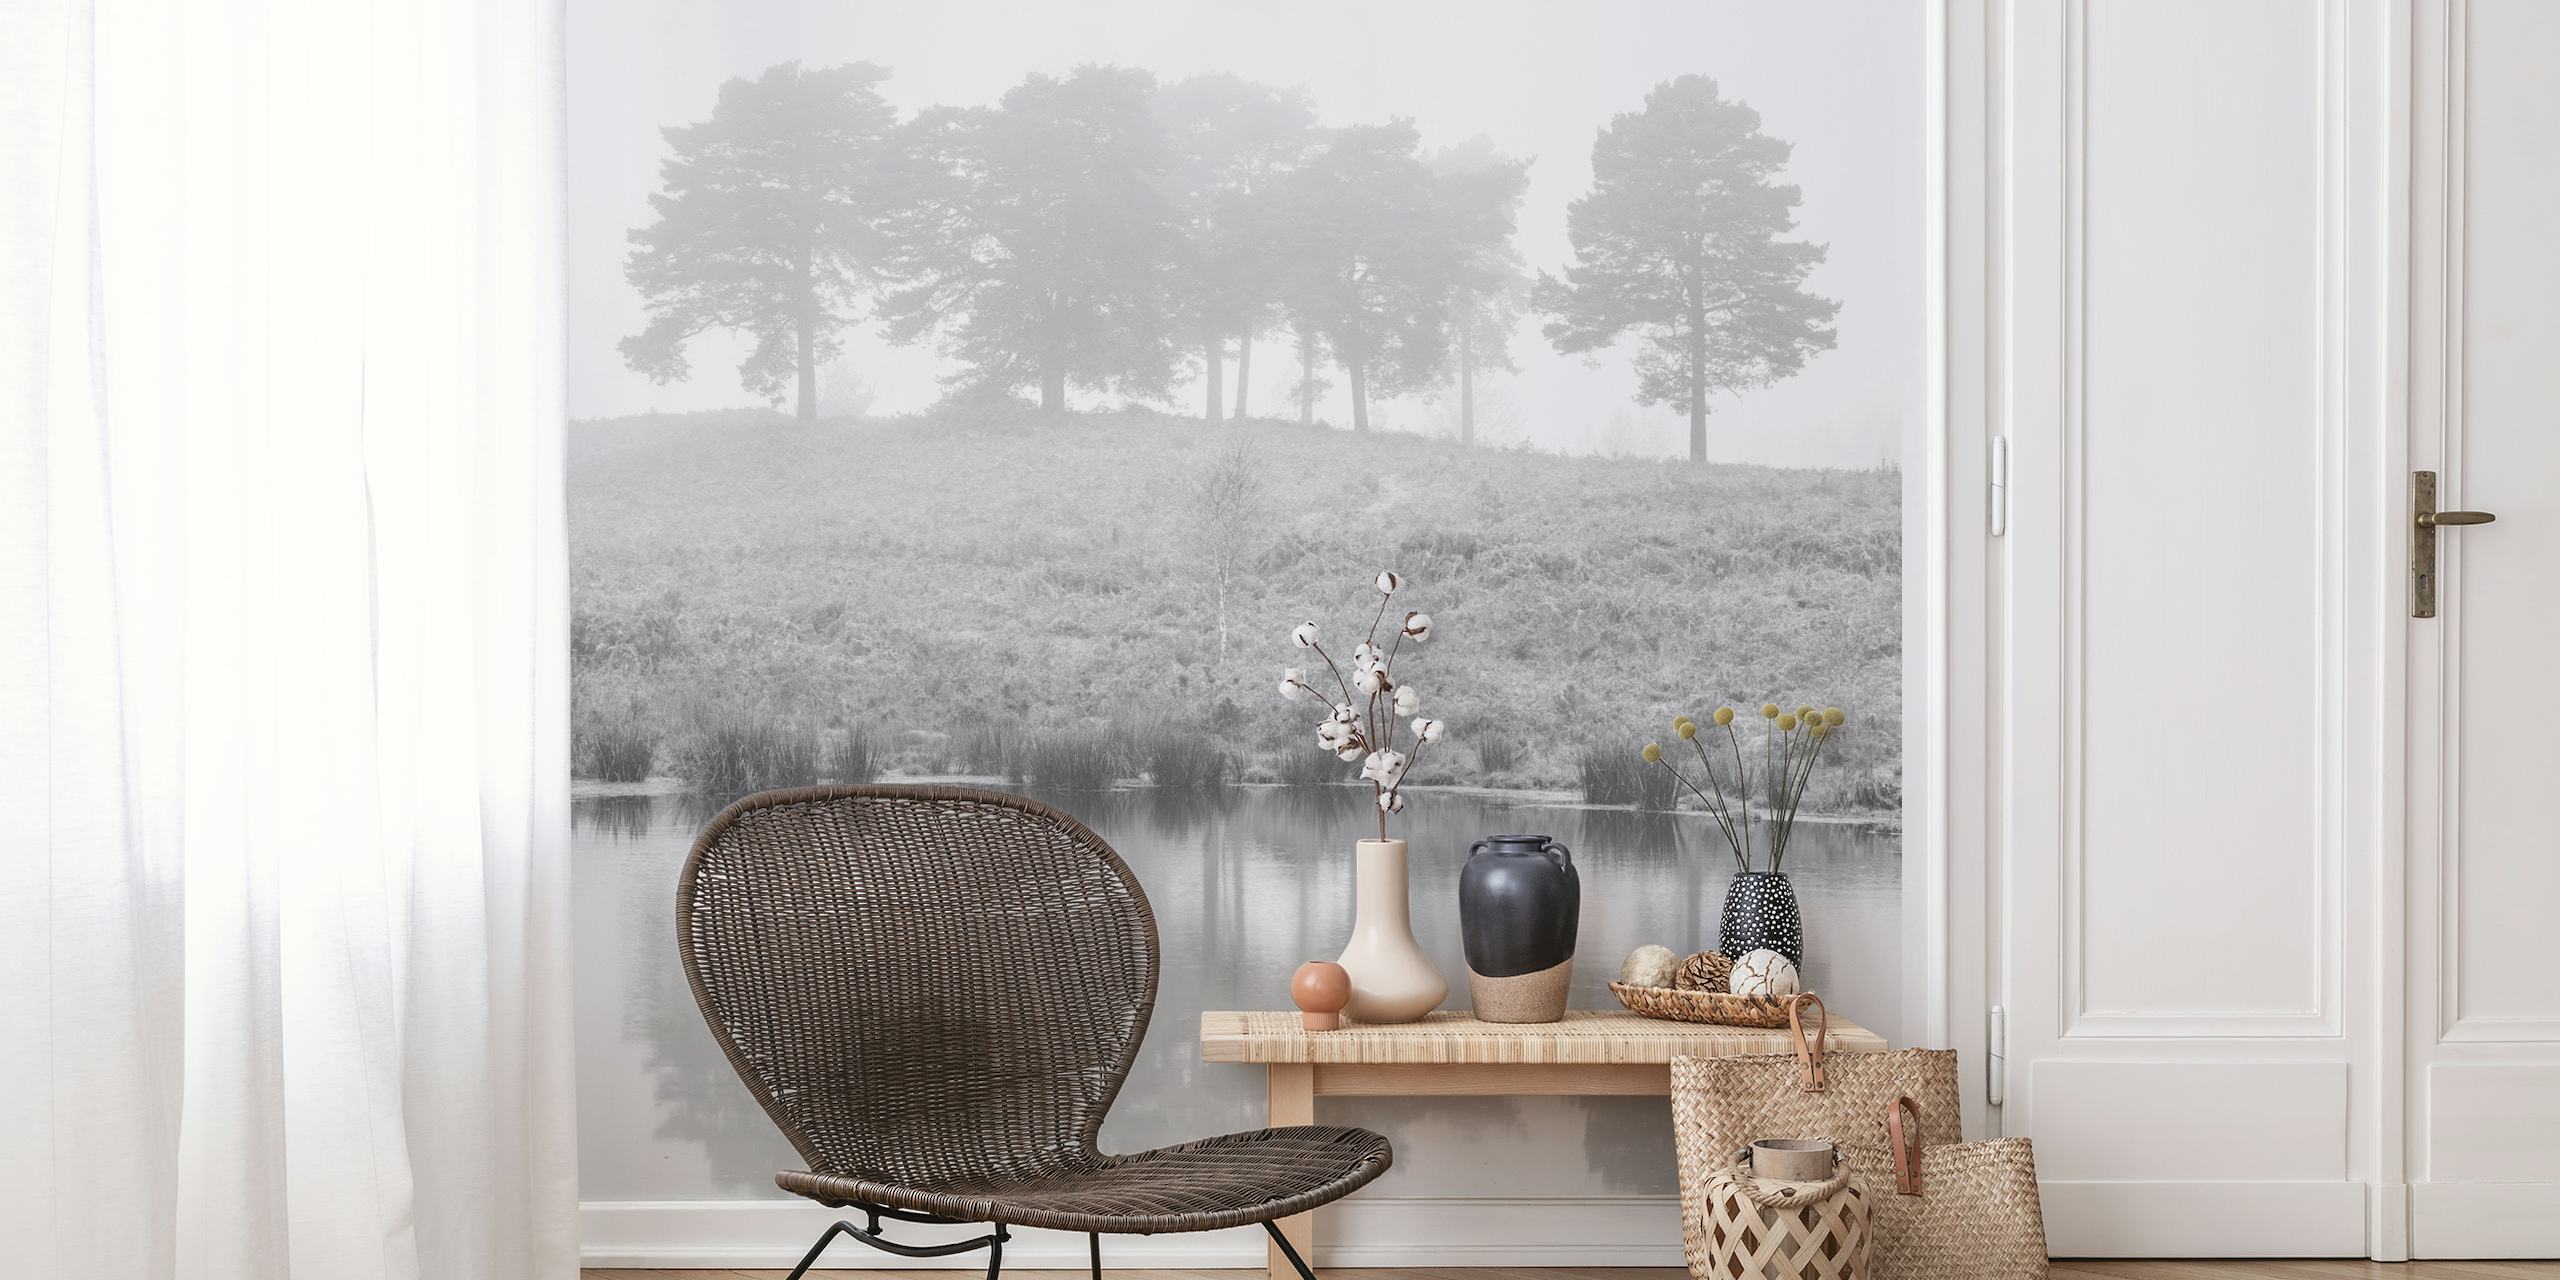 Fotomural vinílico de paisagem serena em tons de cinza com árvores e seu reflexo na água